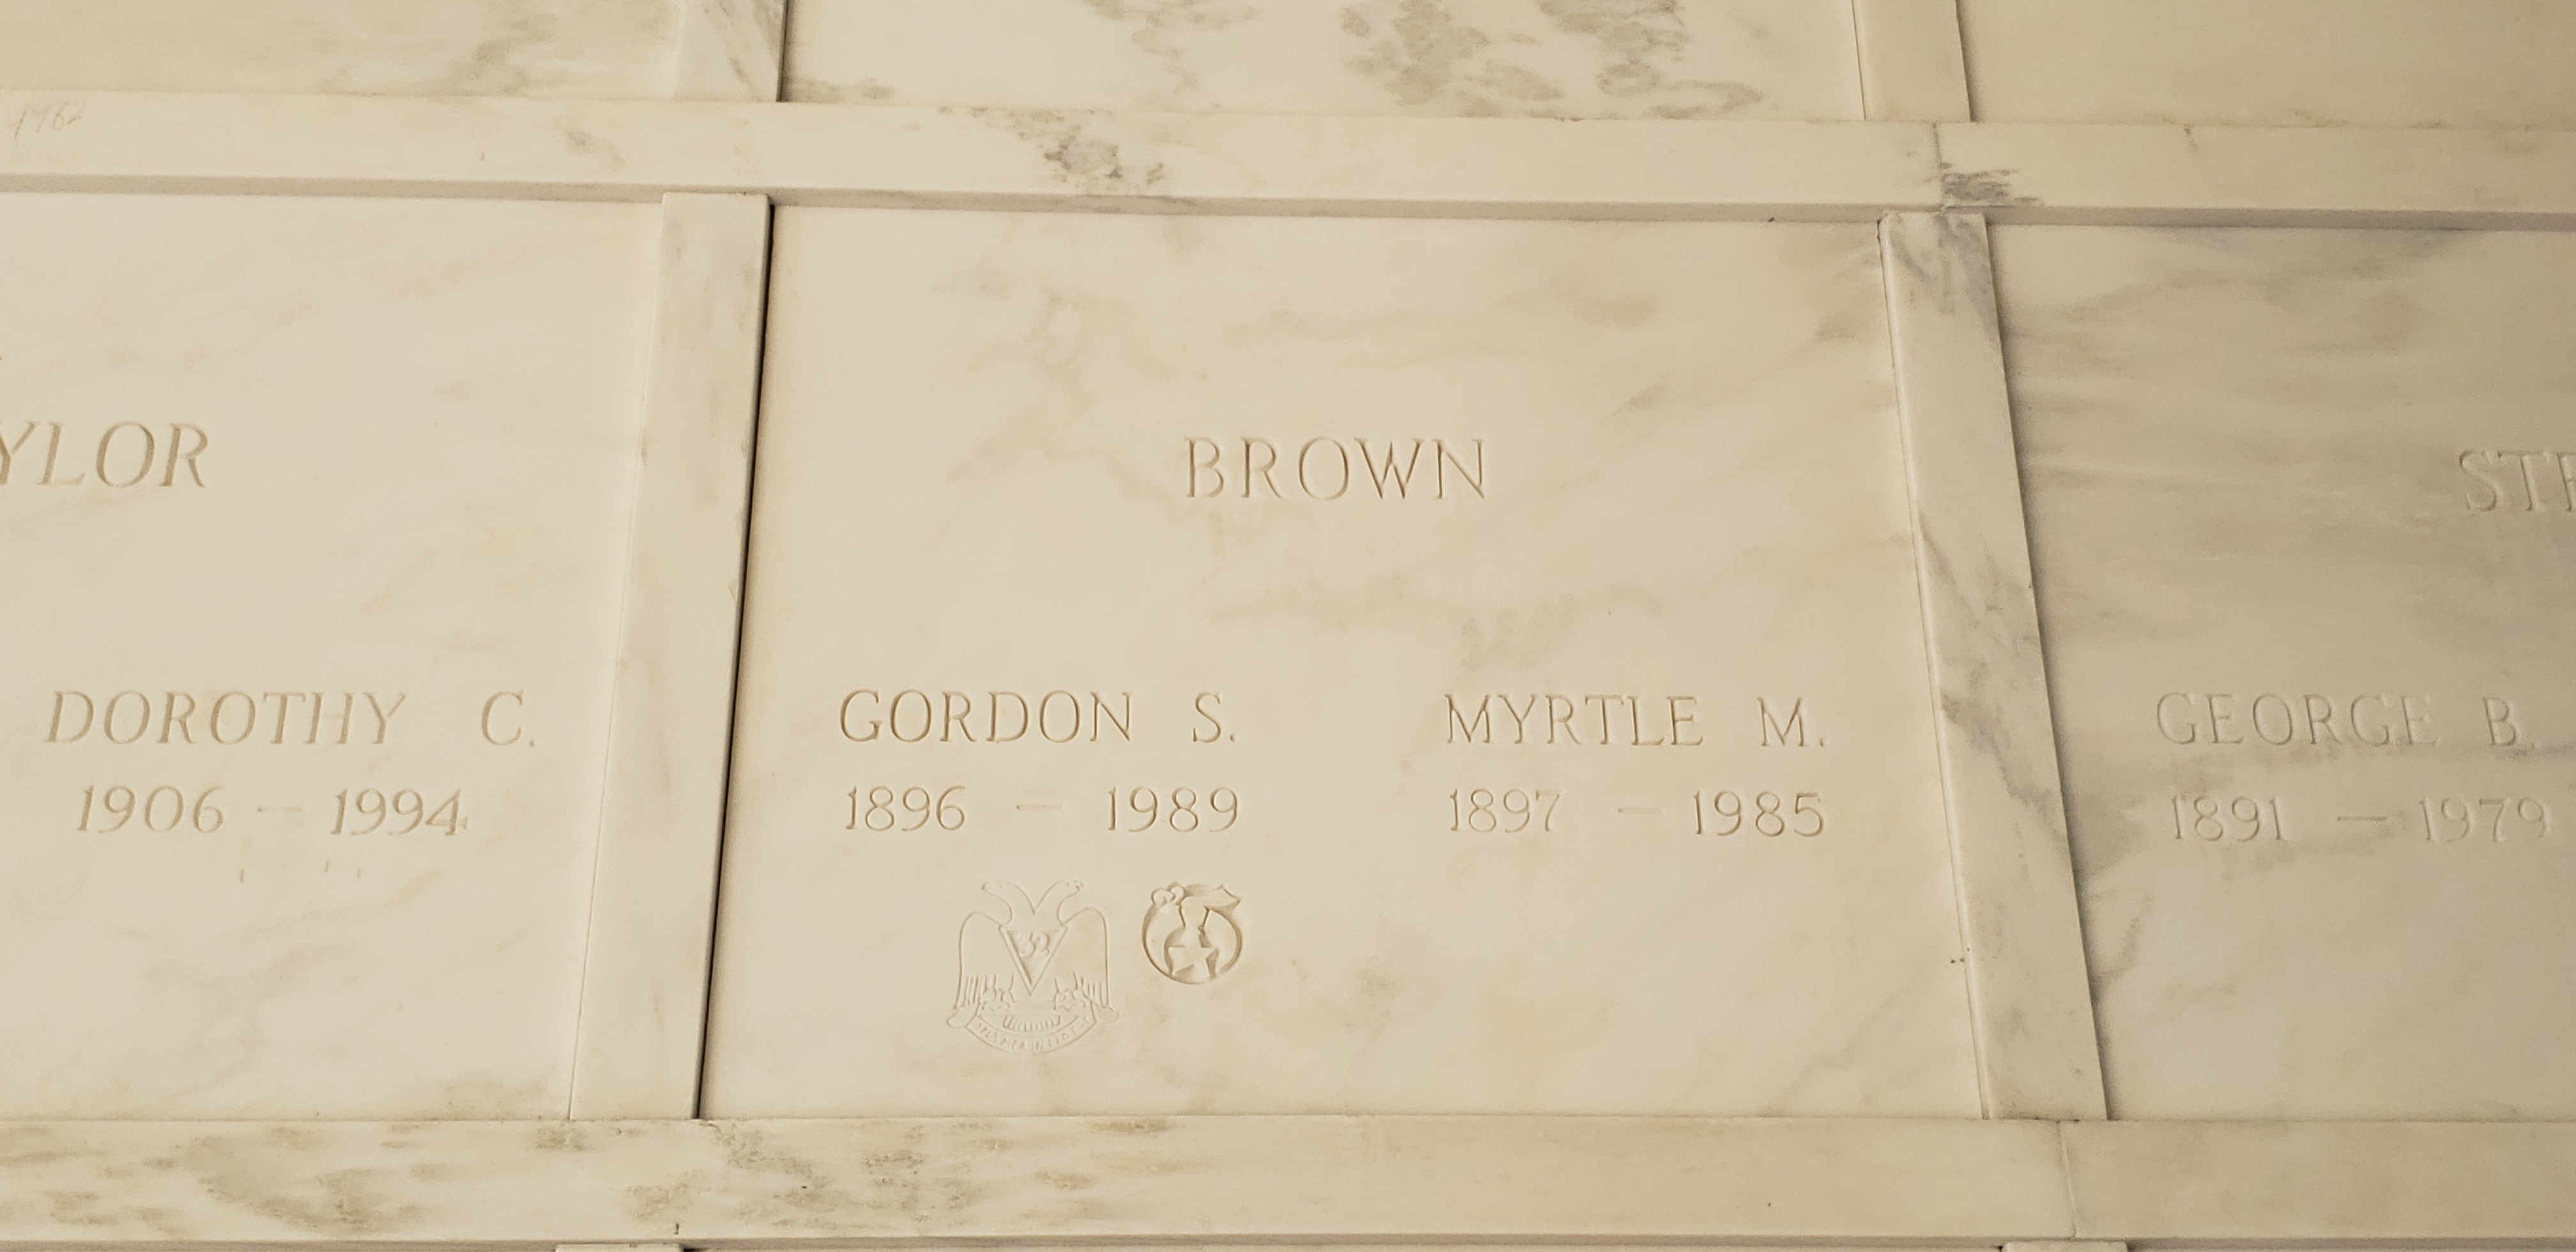 Gordon S Brown